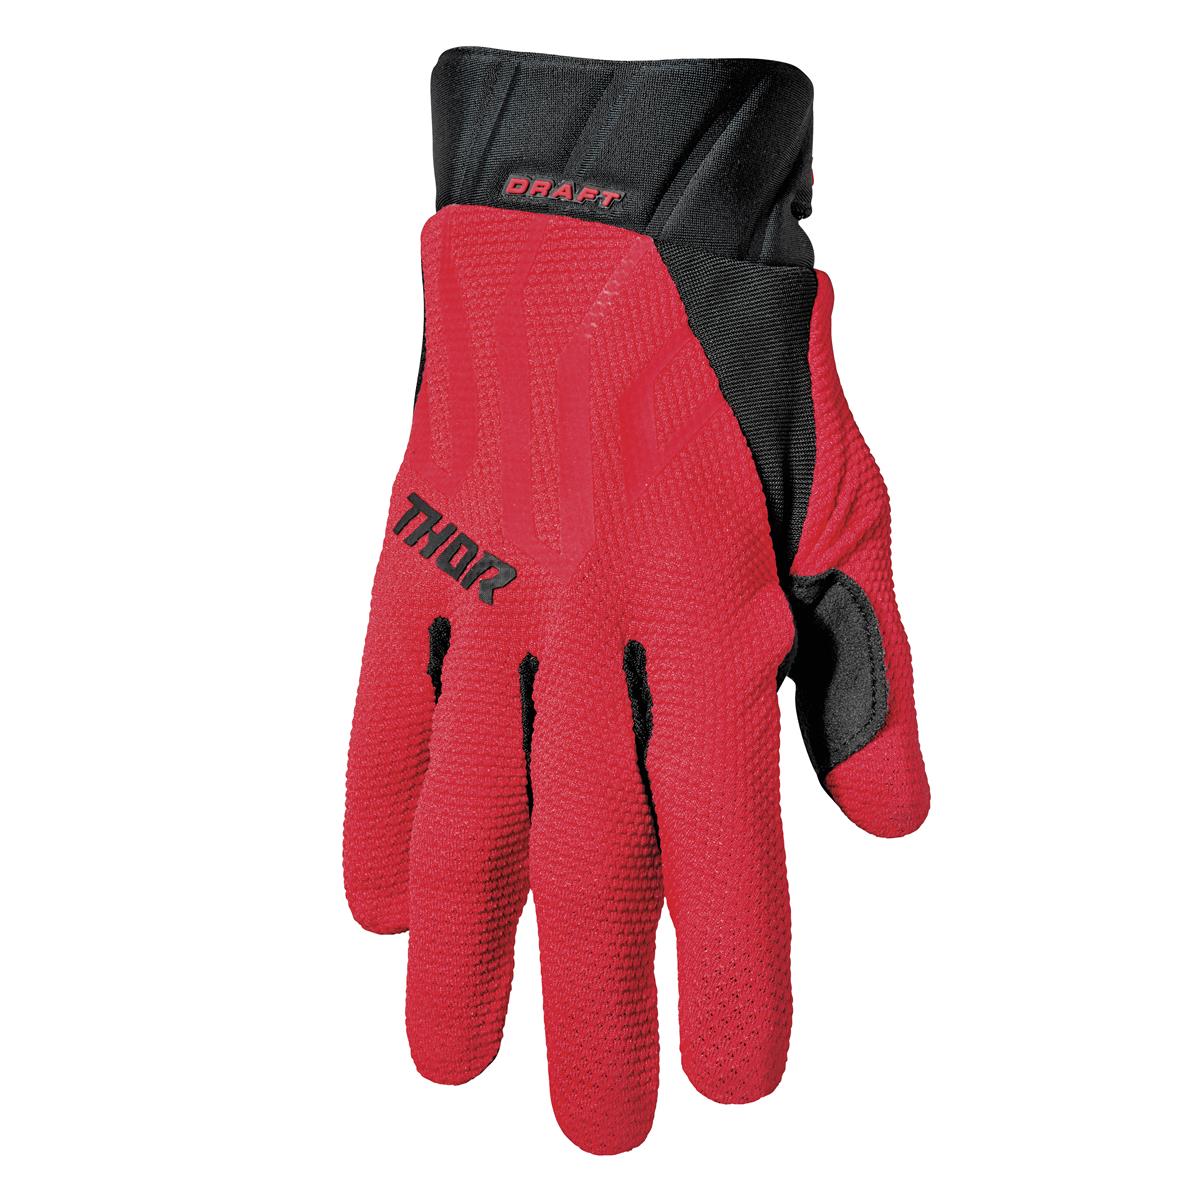 Thor Gloves Draft Red/Black